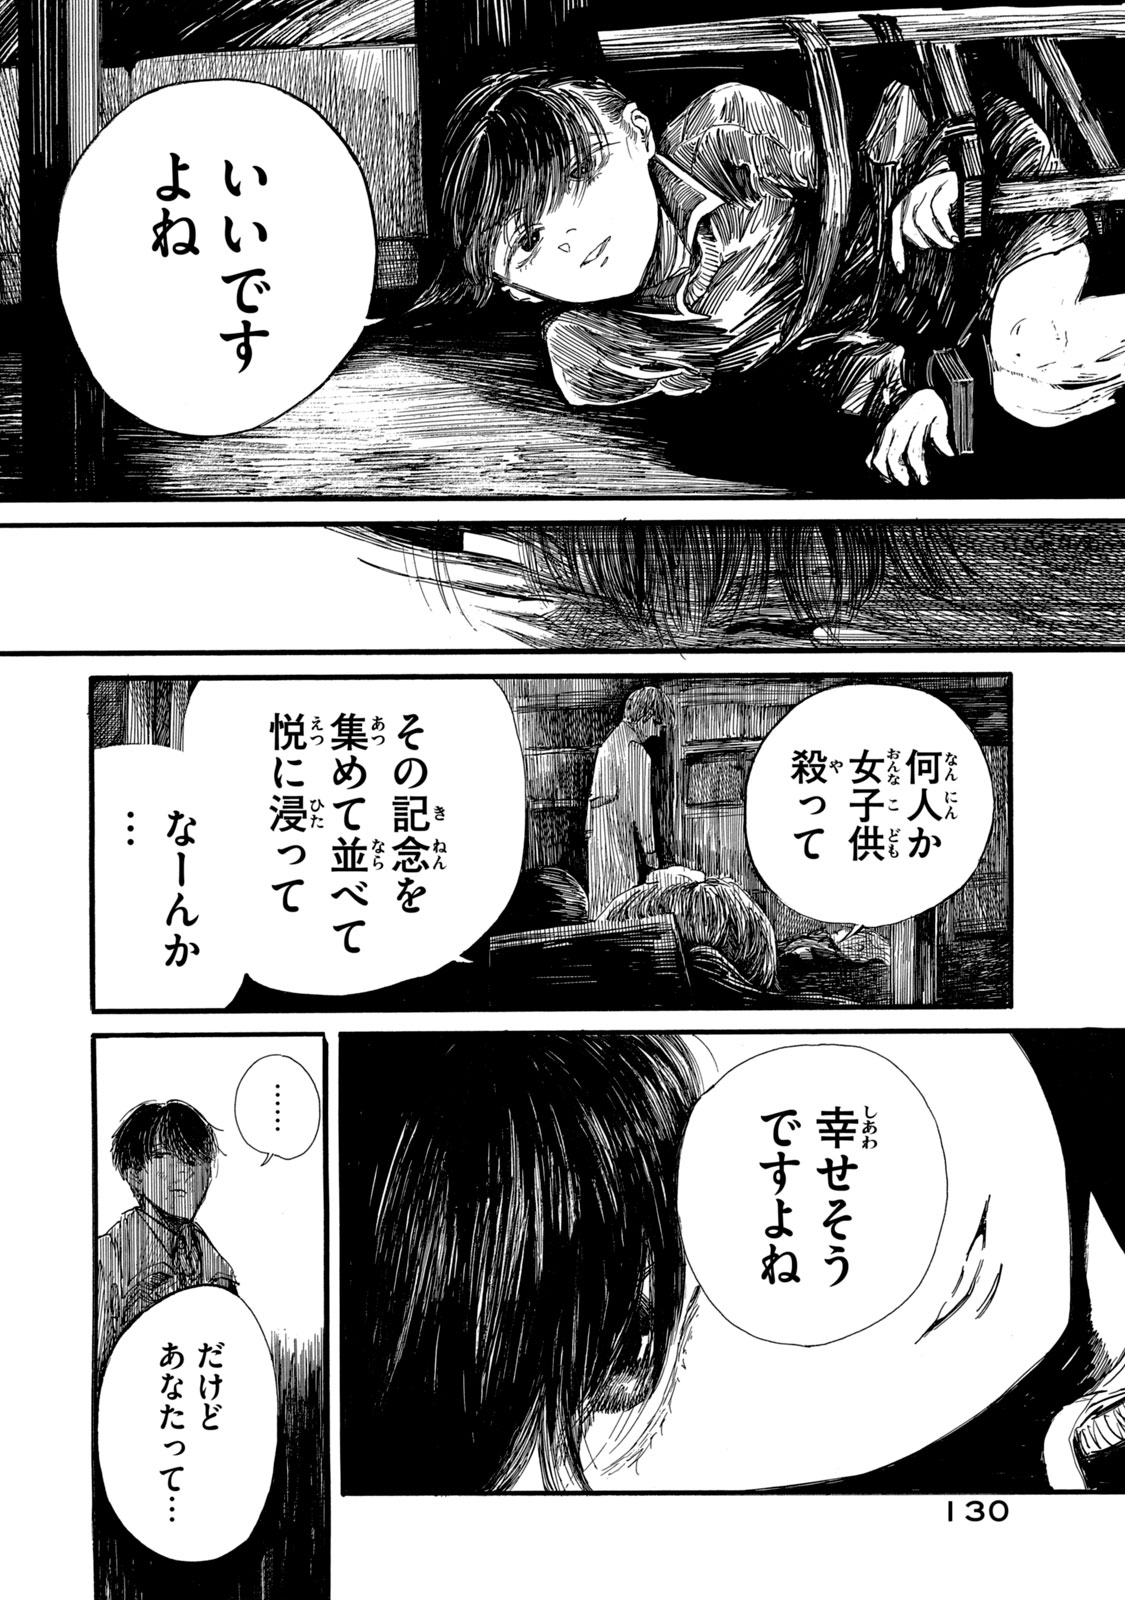 Watashi no Hara no Naka no Bakemono - Chapter 25 - Page 1